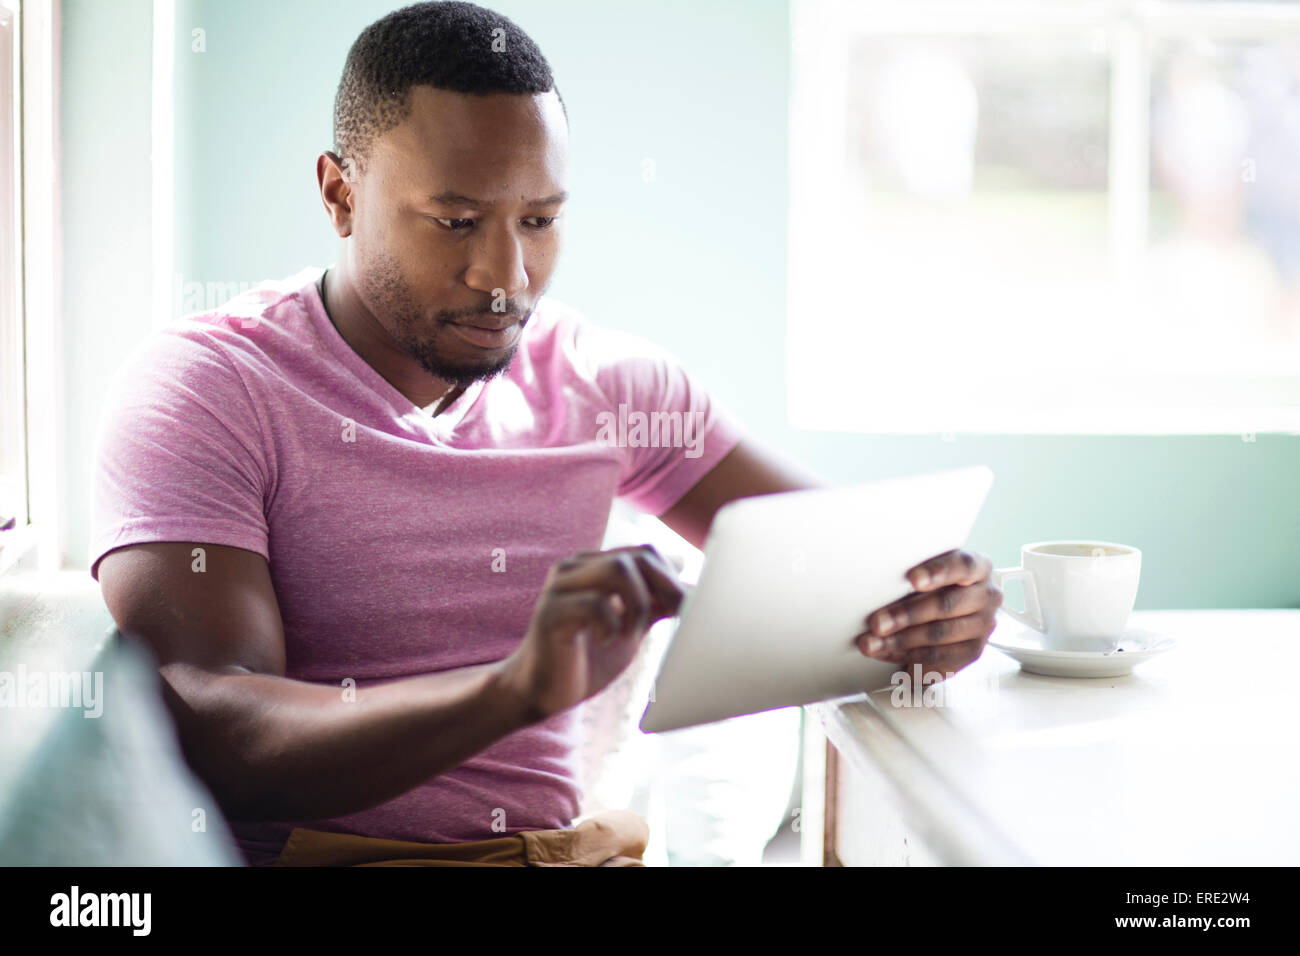 Black man using digital tablet at breakfast Stock Photo